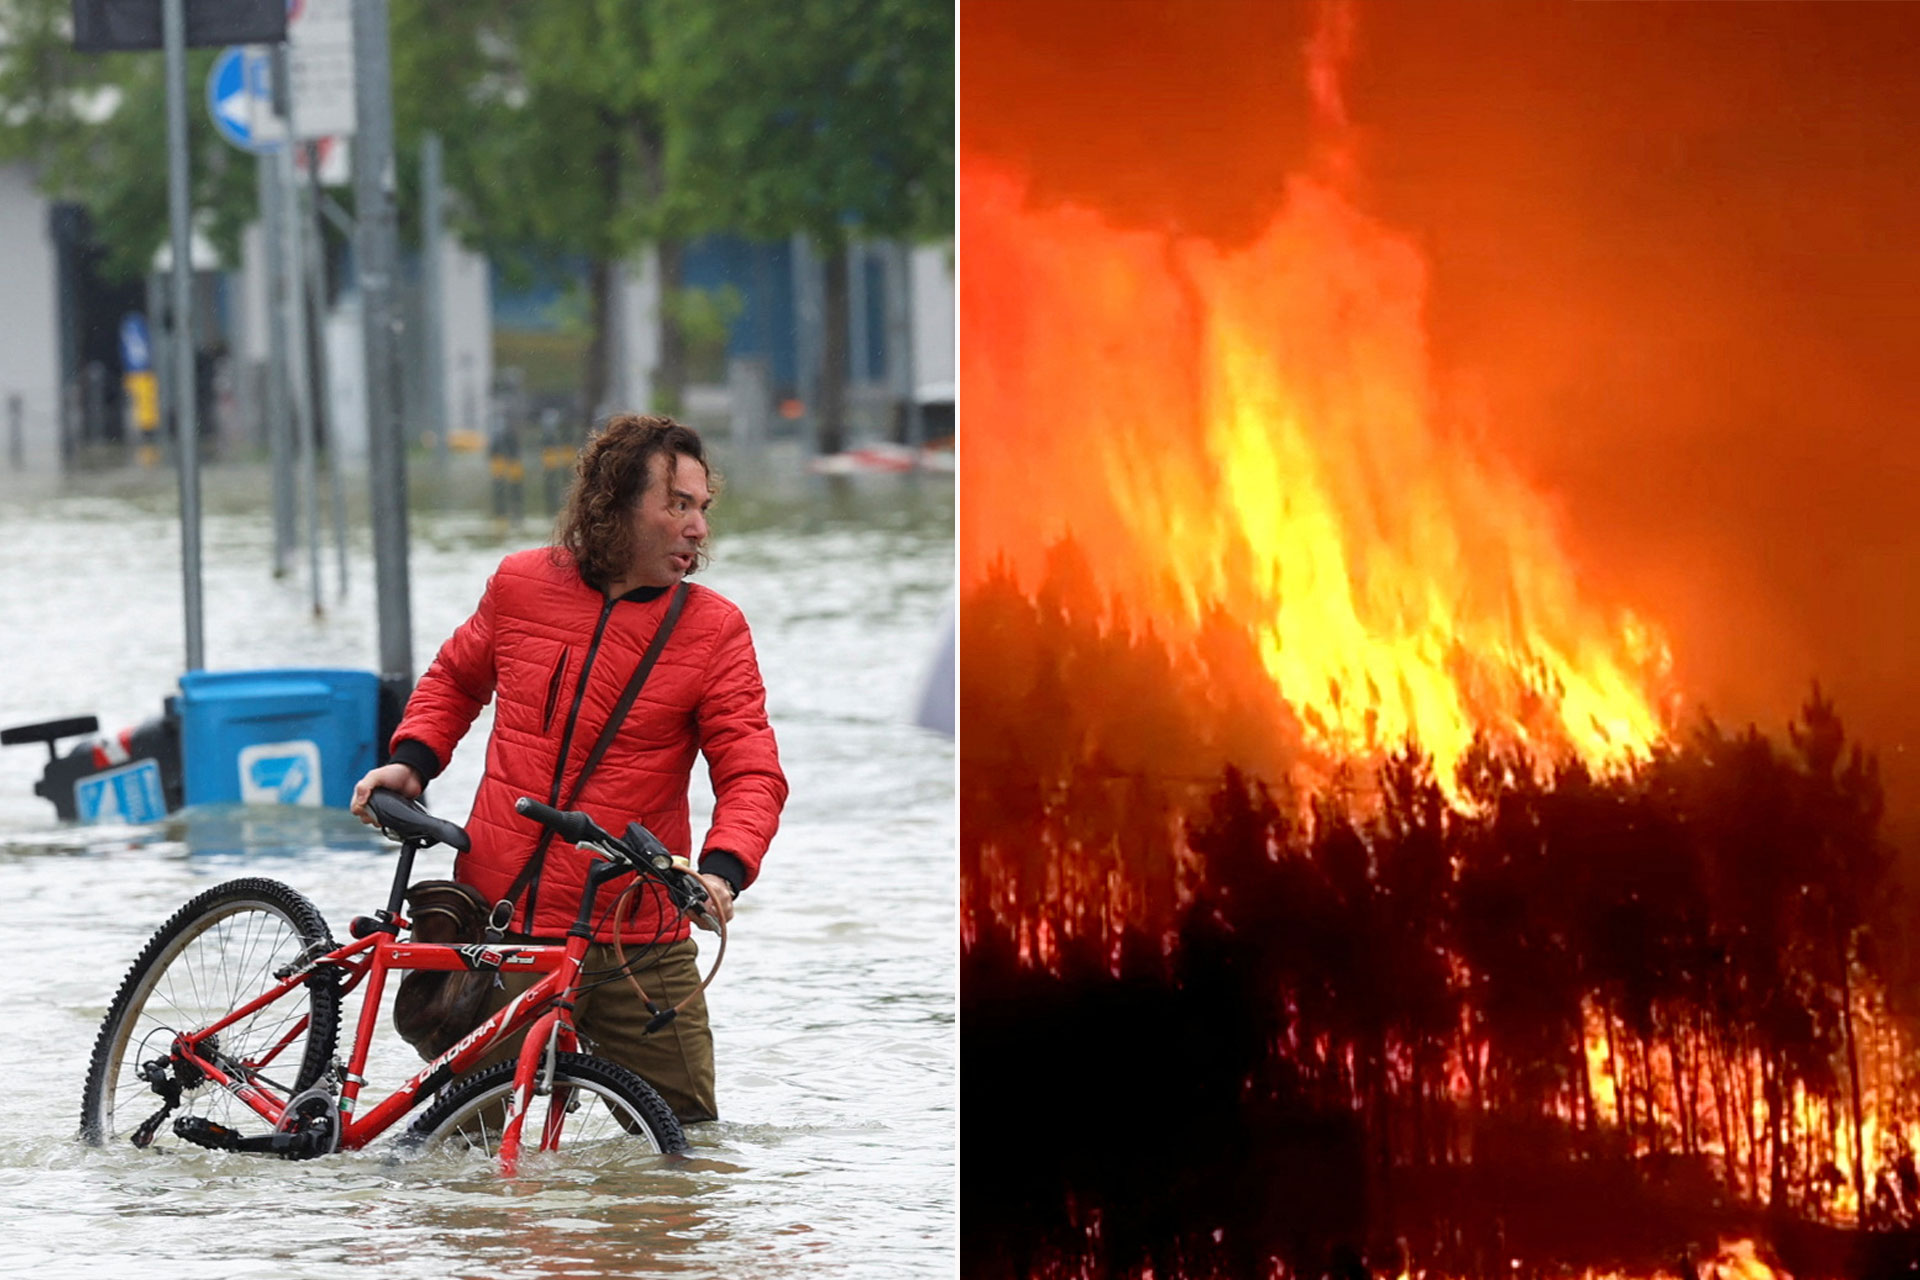 حرائق بإسبانيا وفيضانات بإيطاليا.. فرق الإغاثة تسابق الزمن لإنقاذ الأرواح والممتلكات | أخبار